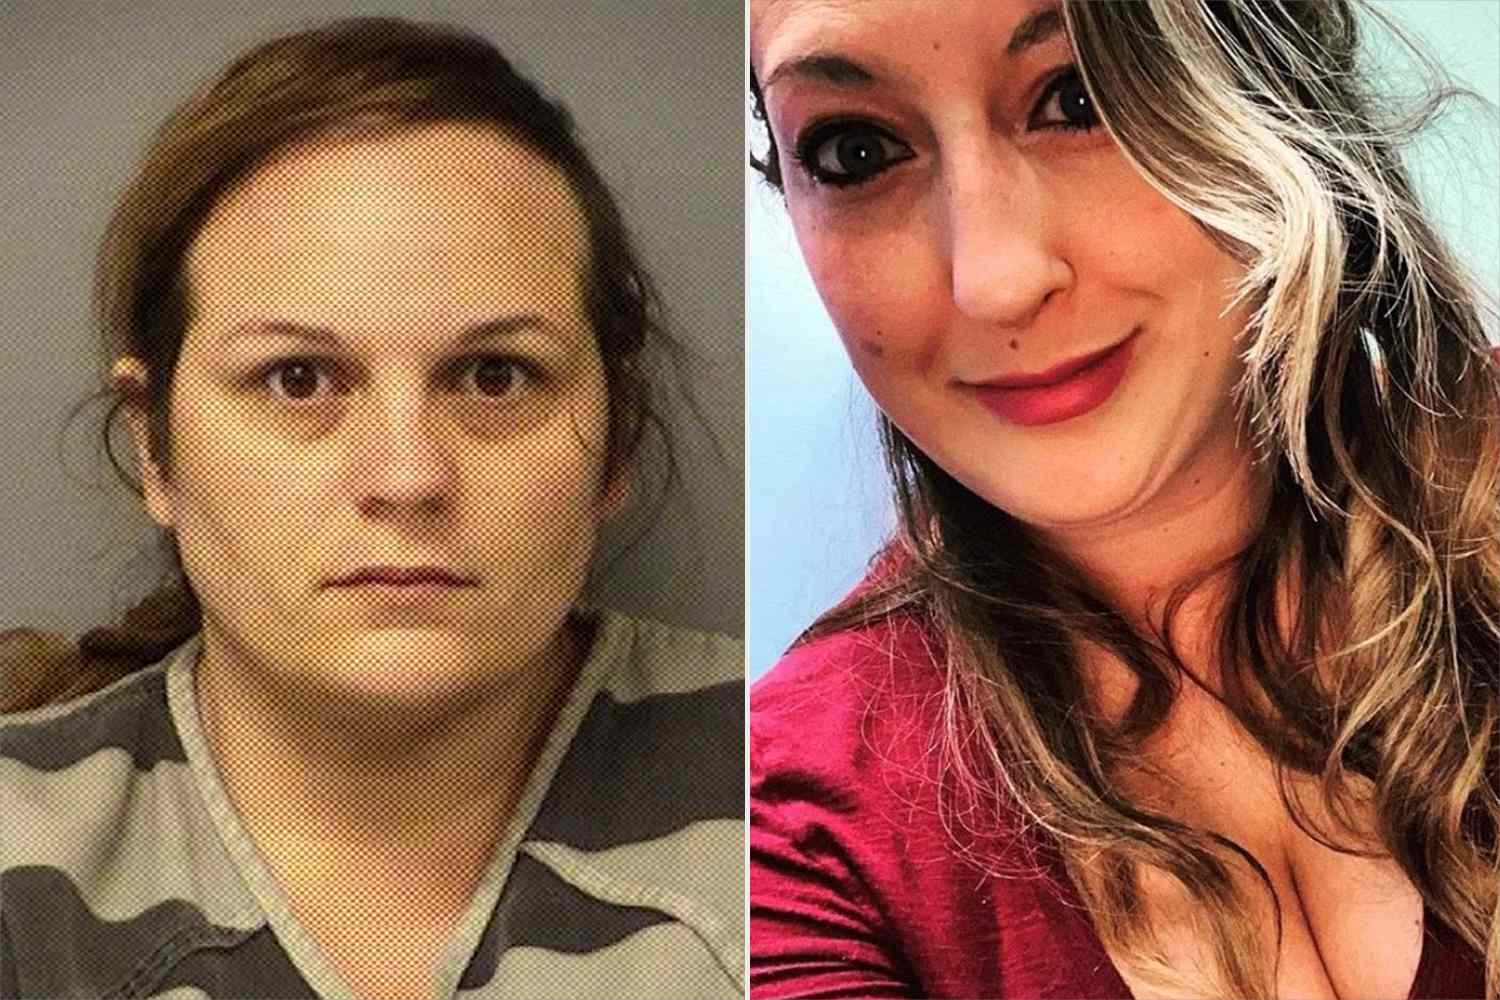 Frau aus Texas, die beschuldigt wird, die beste Freundin erwürgt und dann ihr neugeborenes Mädchen gestohlen zu haben, soll sich schuldig bekennen